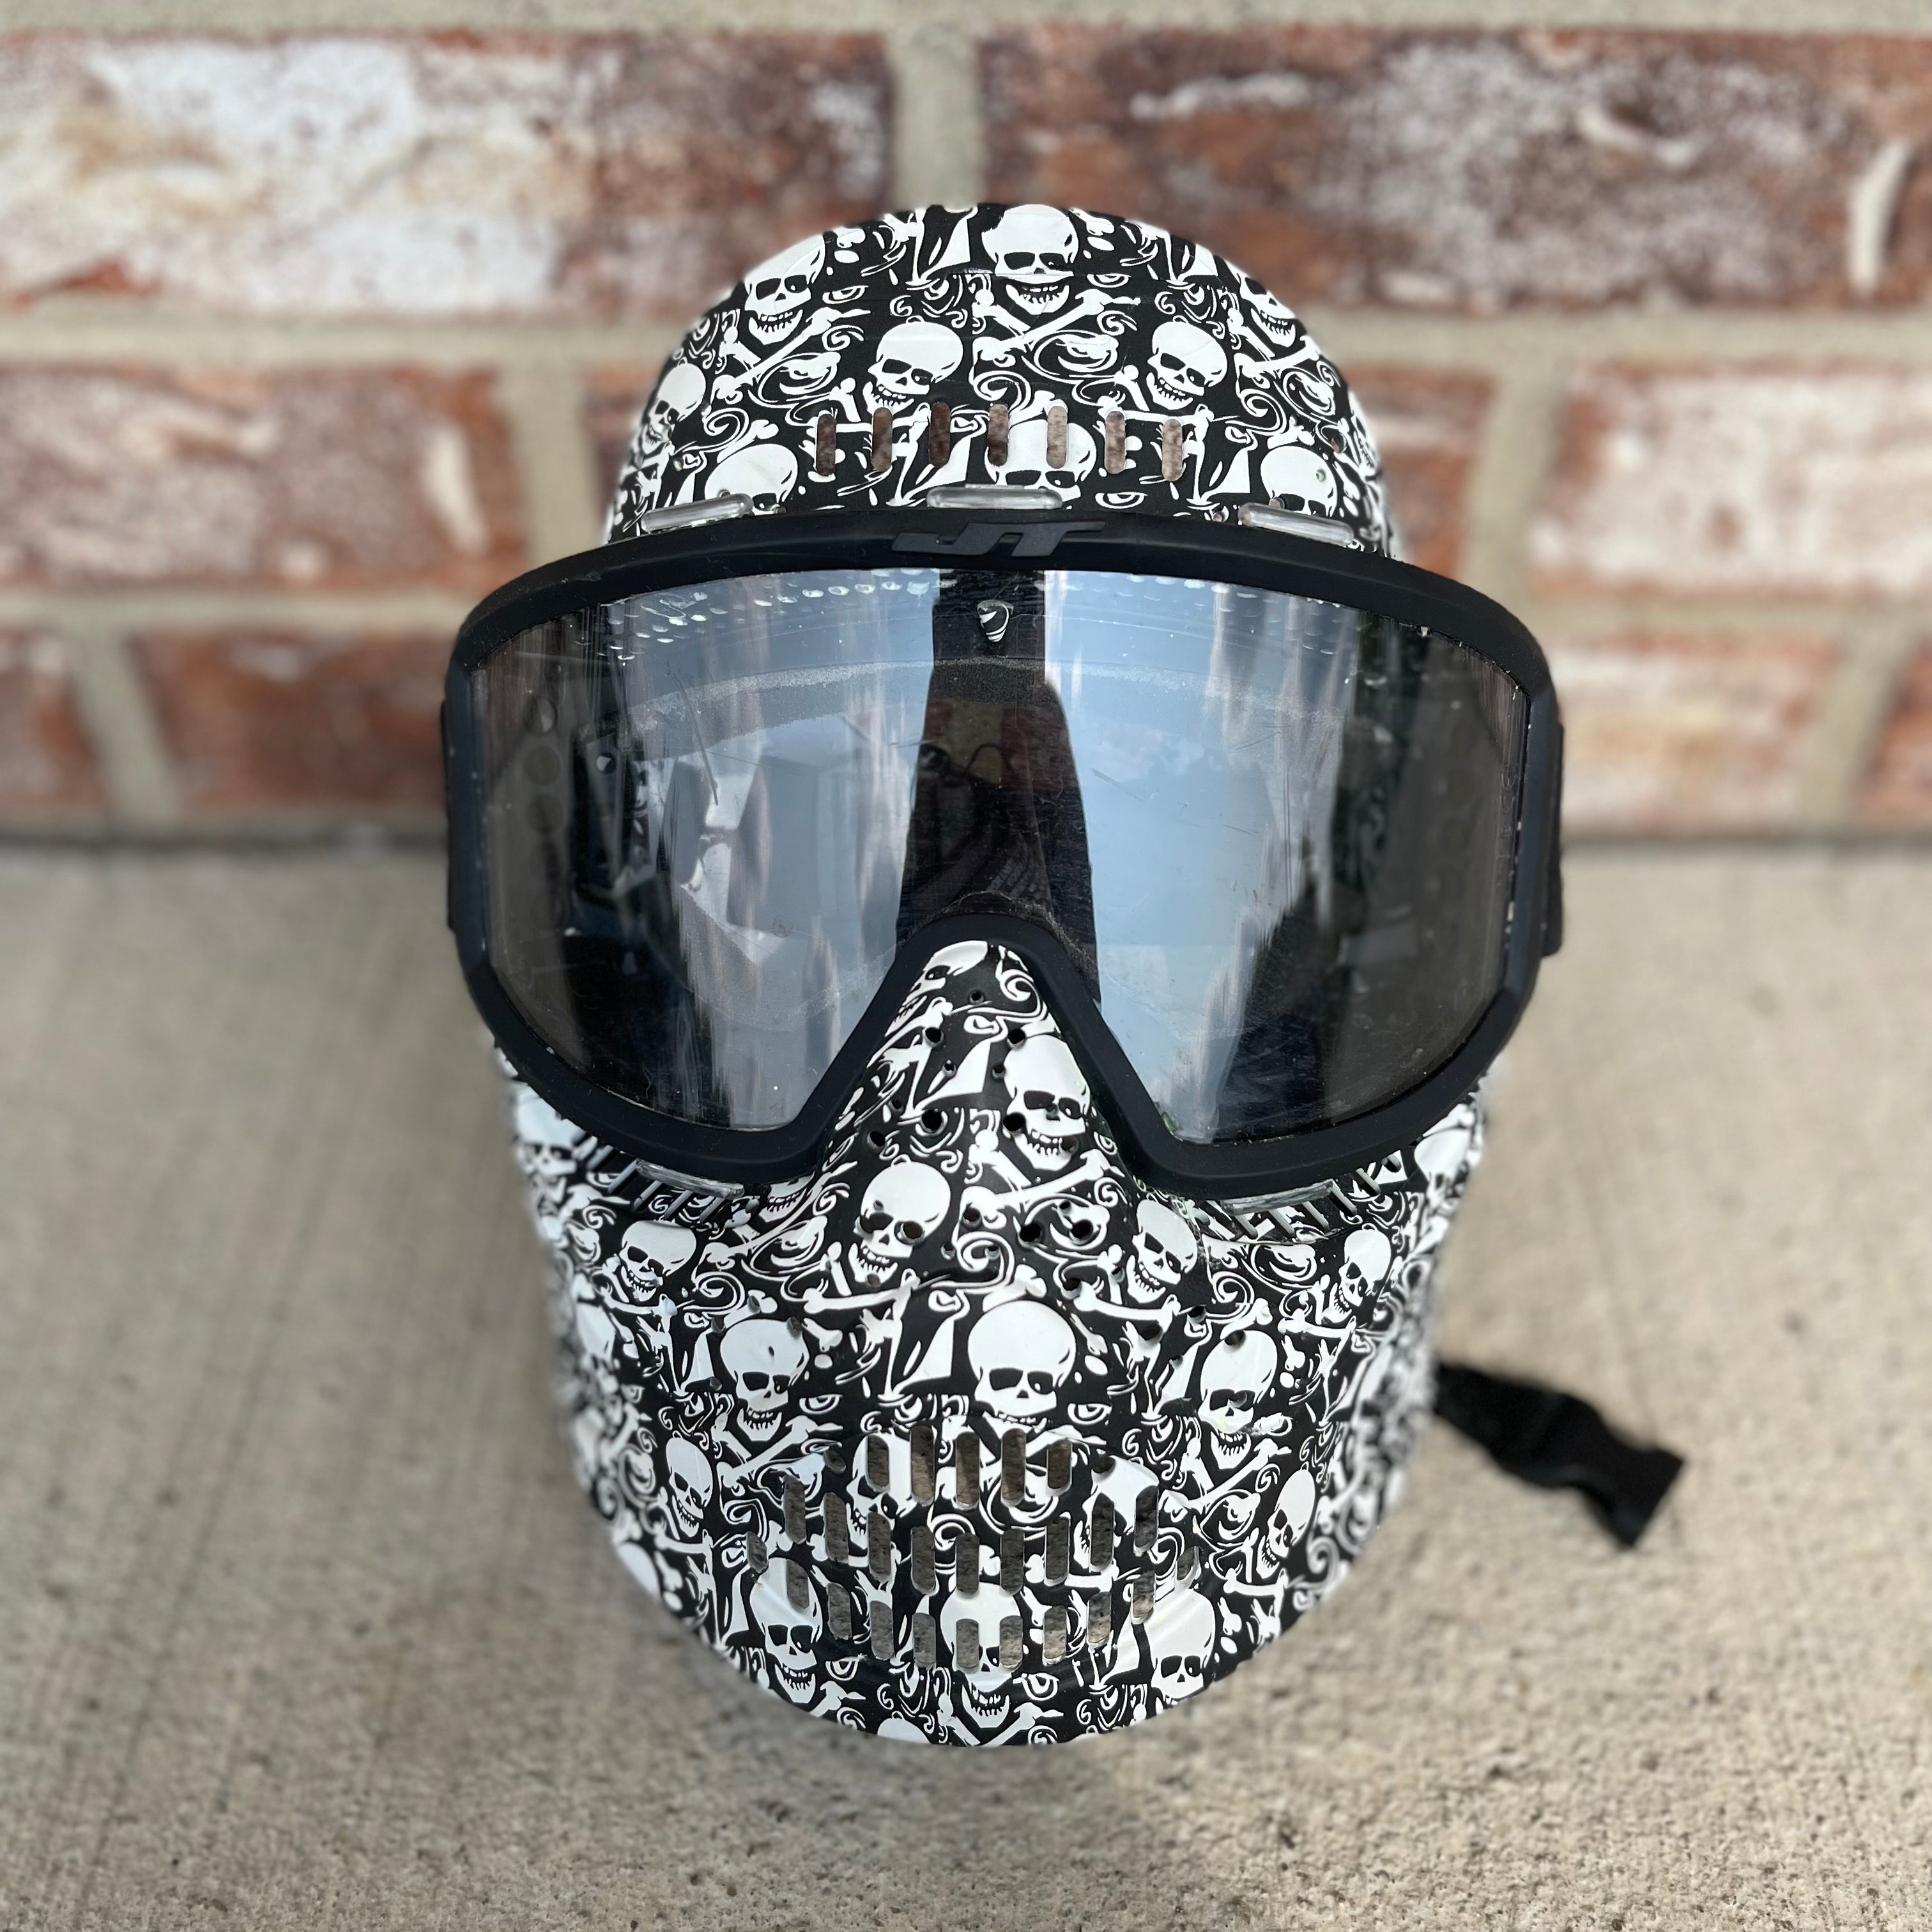 Used JT Paintball Mask - Black/White Skulls